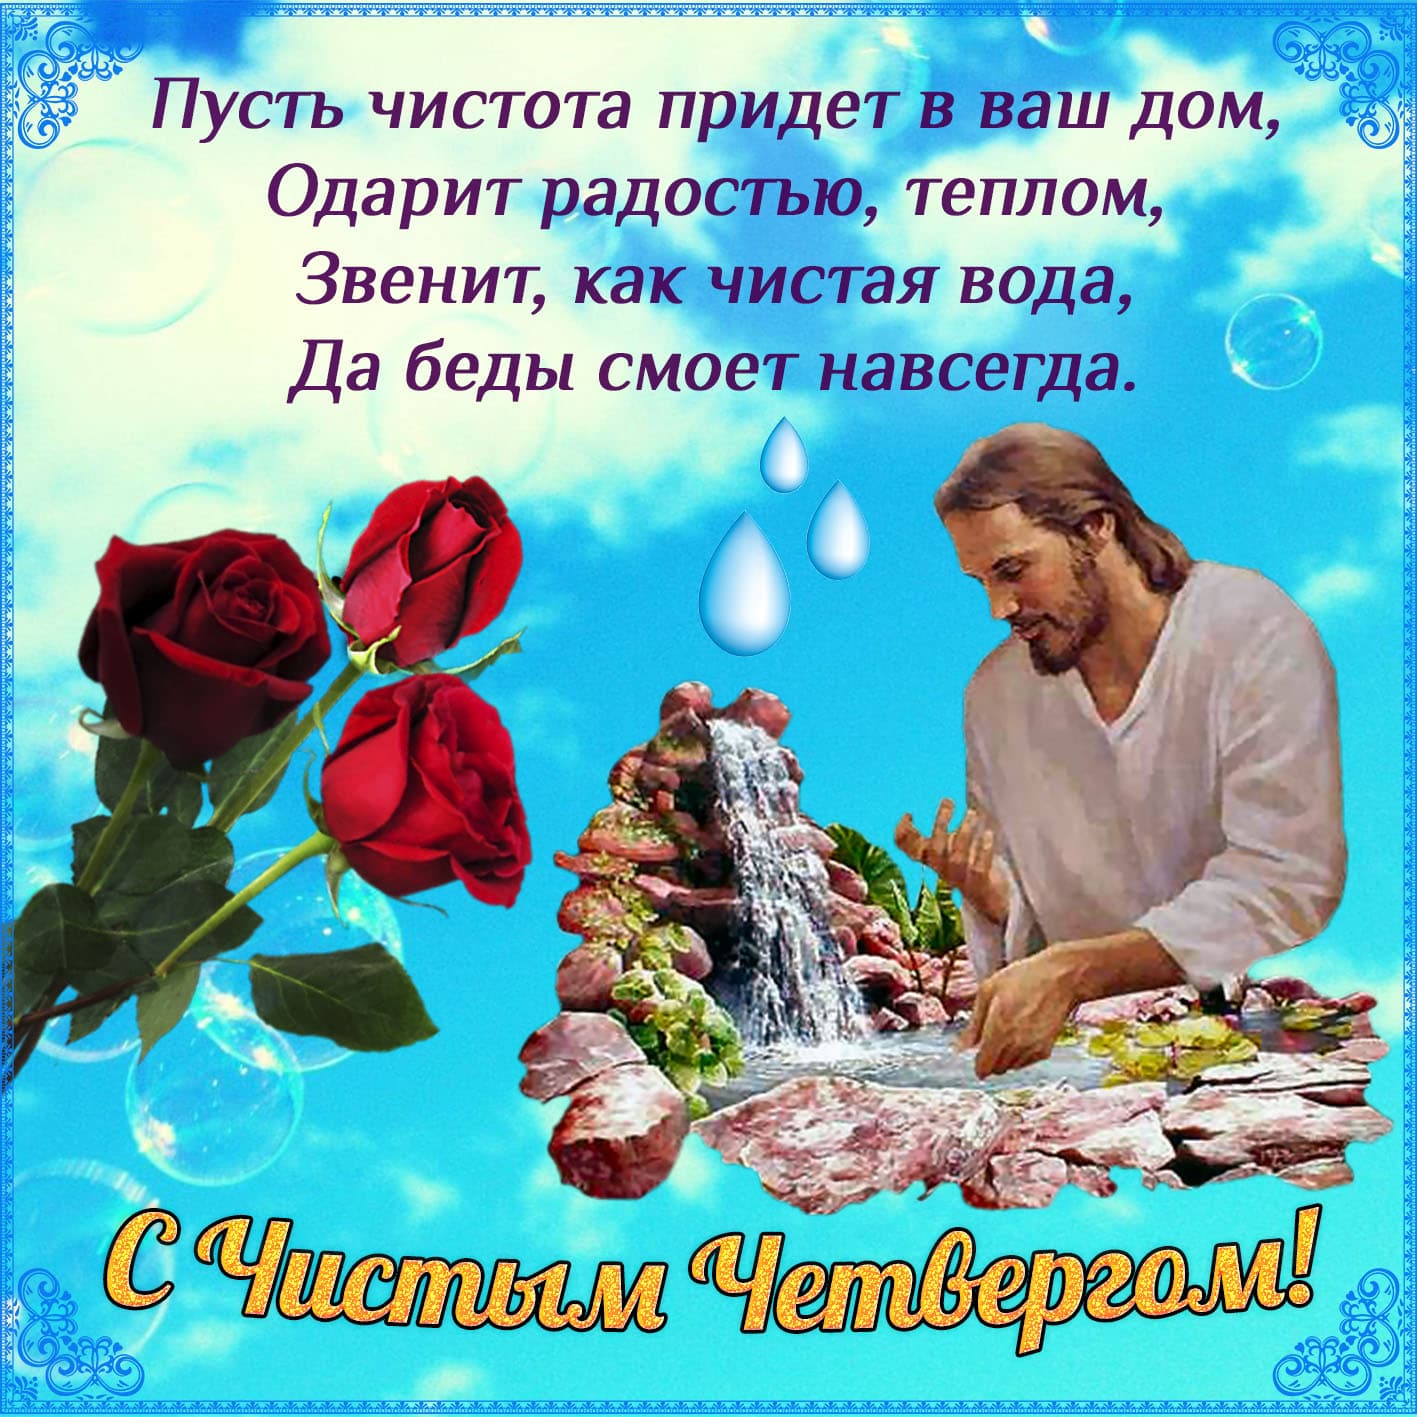 Православная картинка чистый четверг